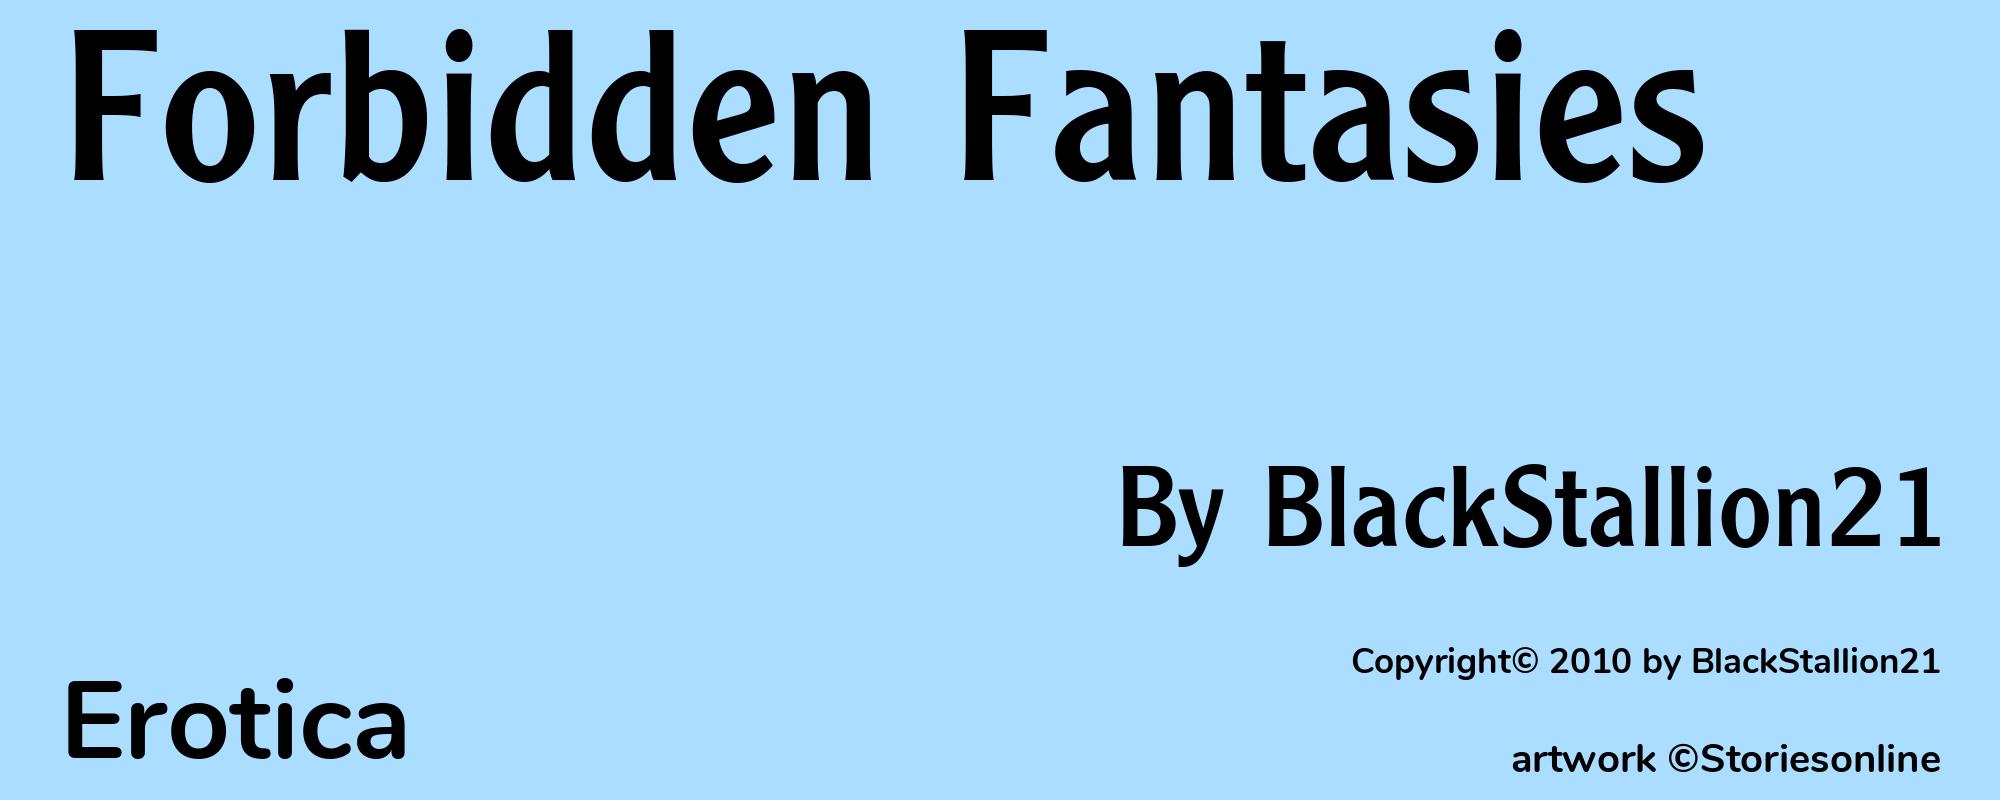 Forbidden Fantasies - Cover